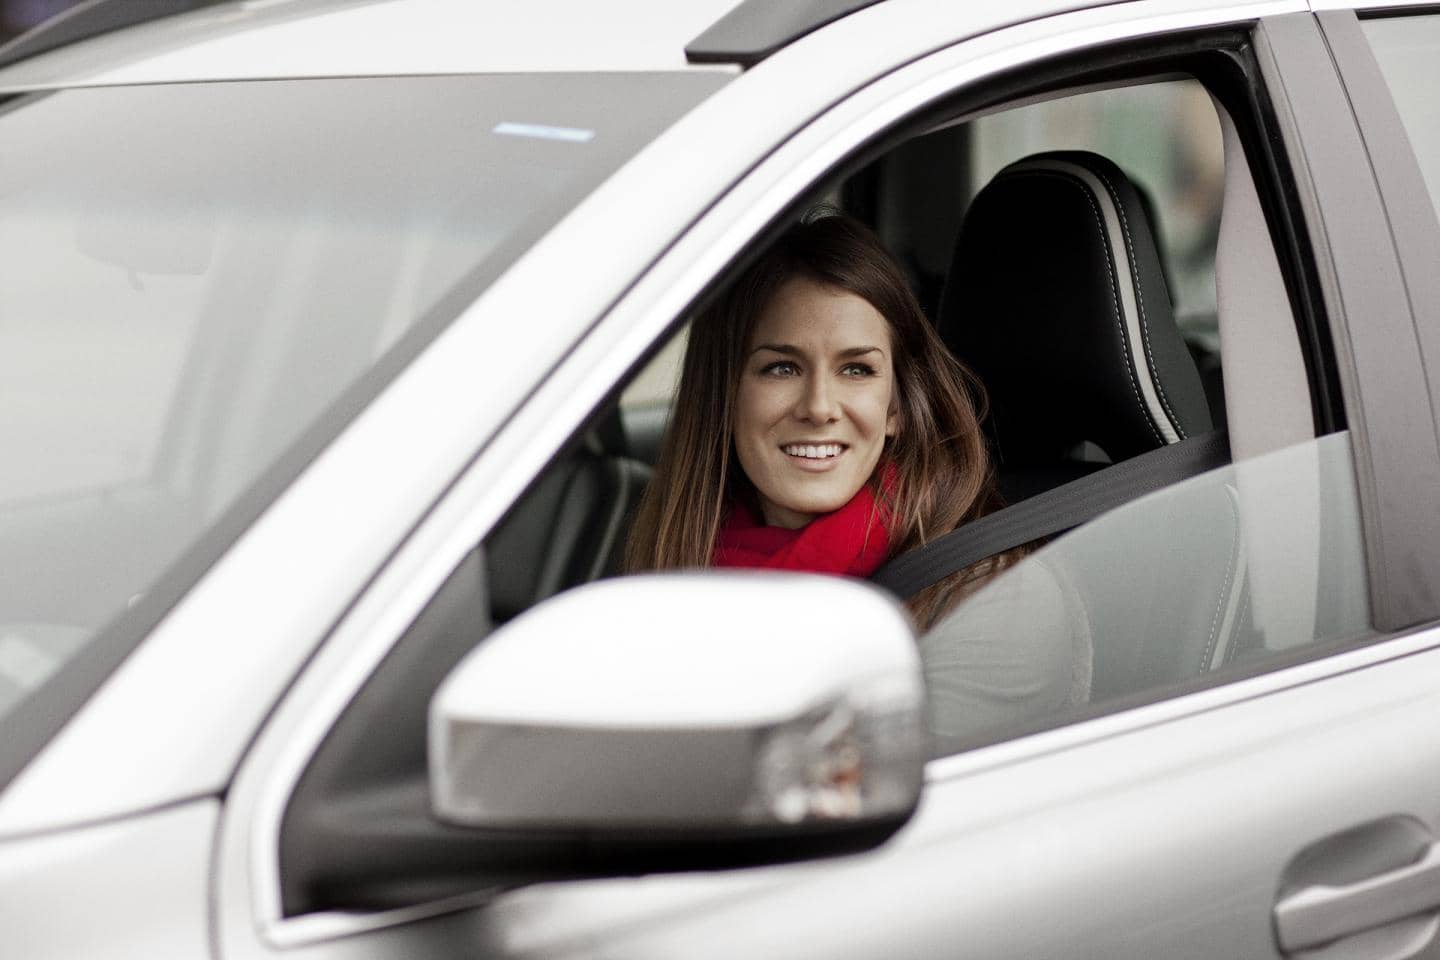 køreteknisk kursus gennem FDM for en mere sikker kørsel - tag kurset gennem Tryg forsikring og spar penge